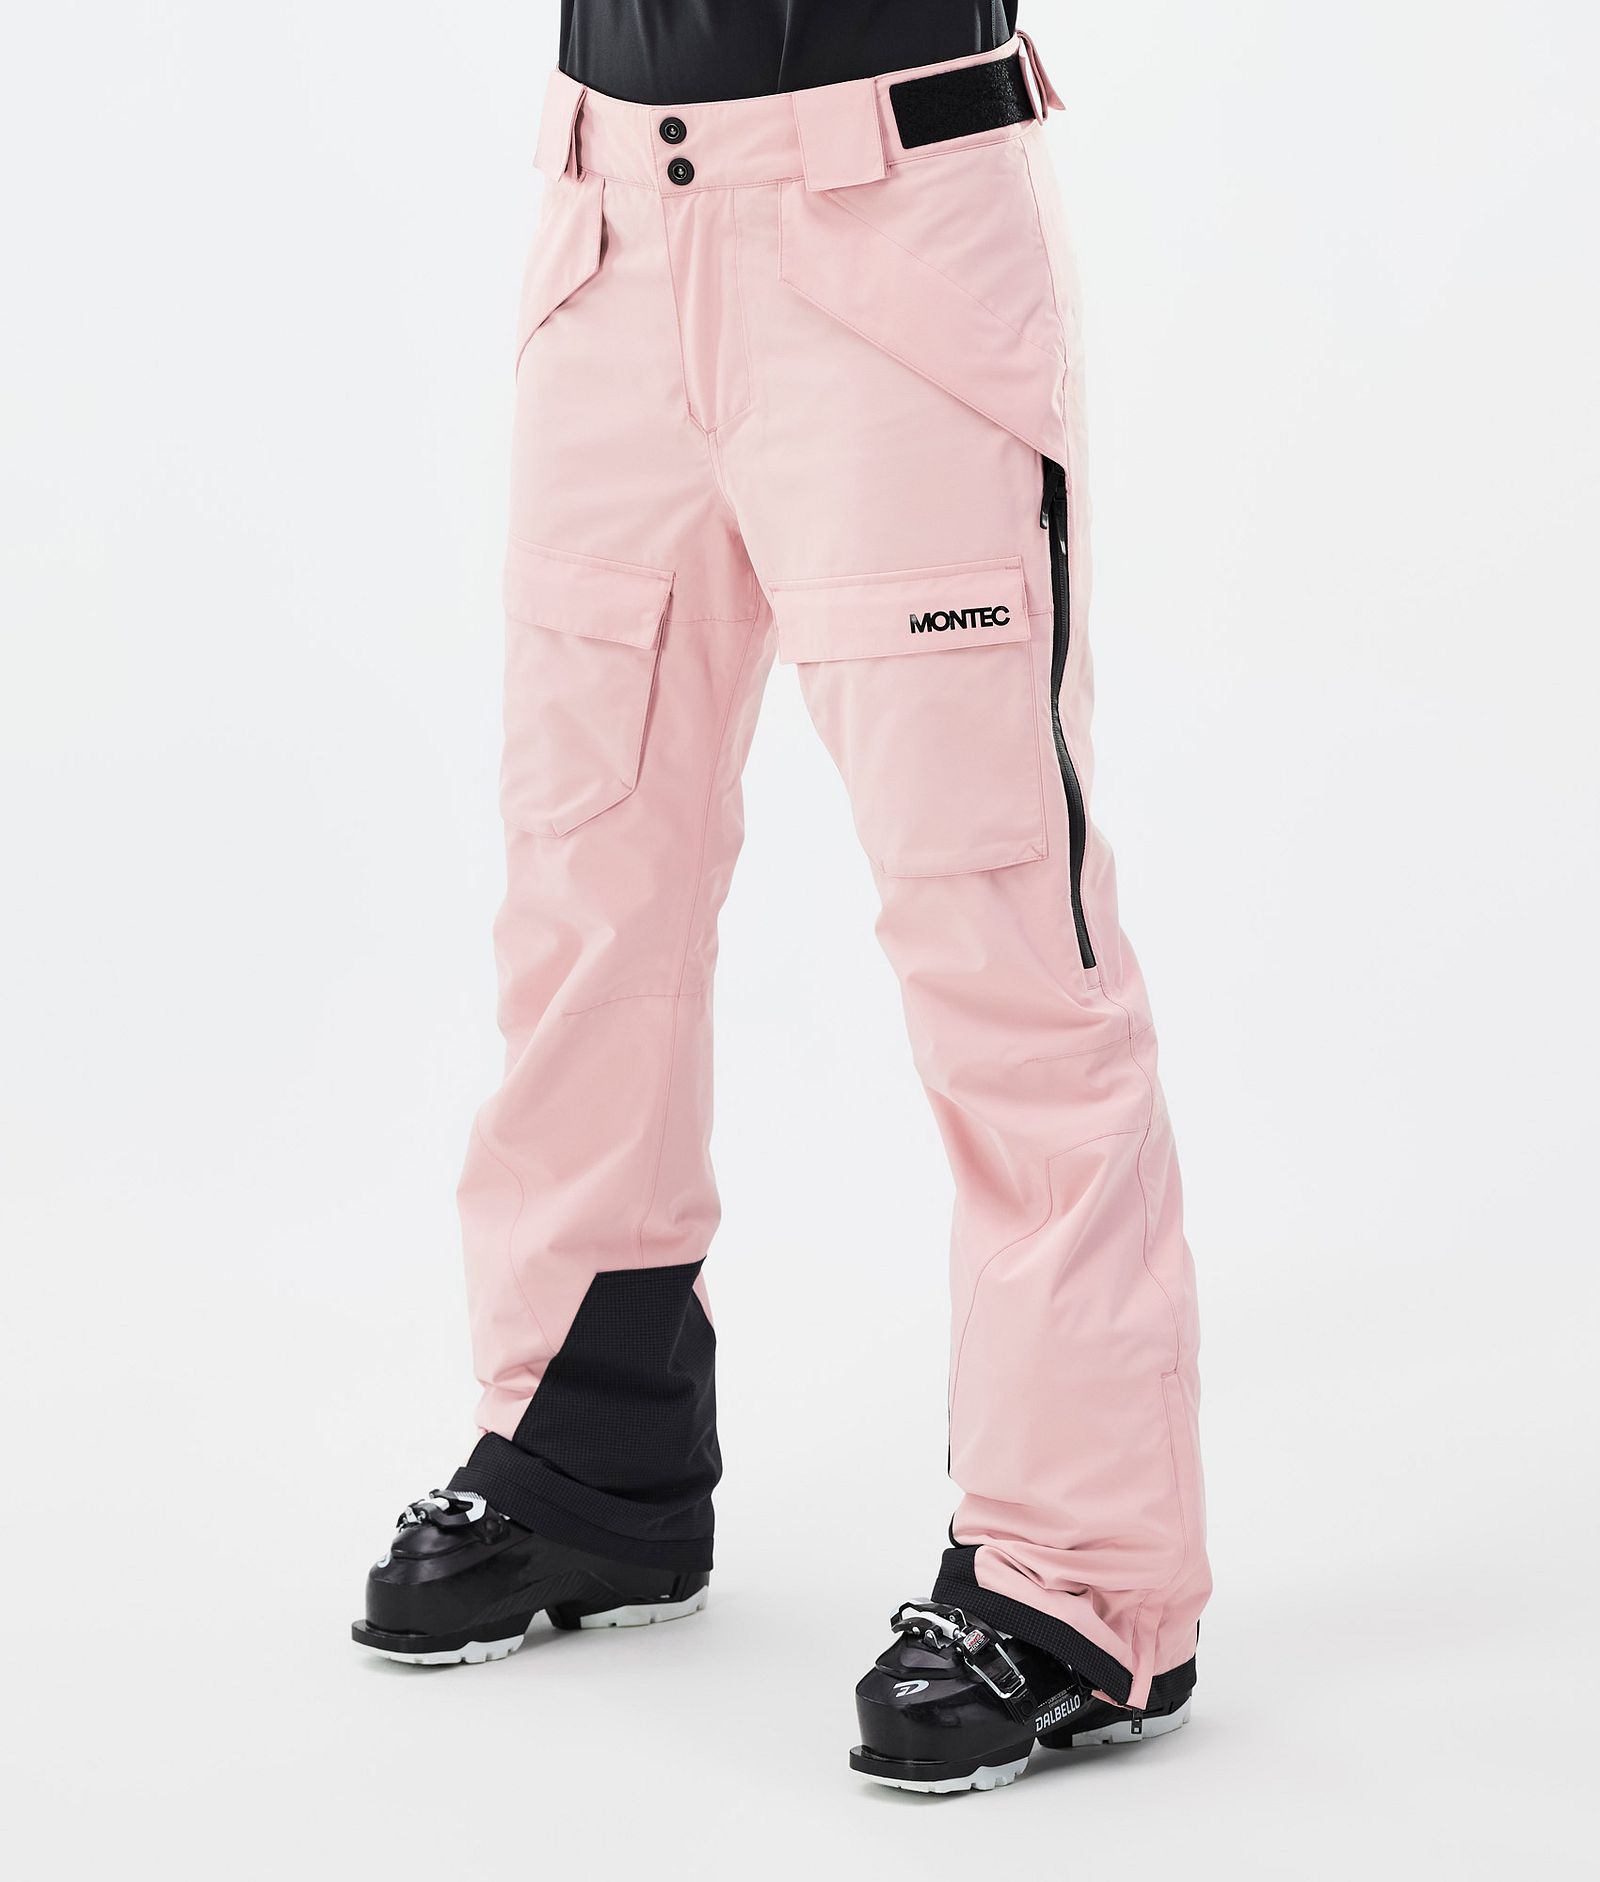 Kirin W Pantalon de Ski Femme Soft Pink, Image 1 sur 6